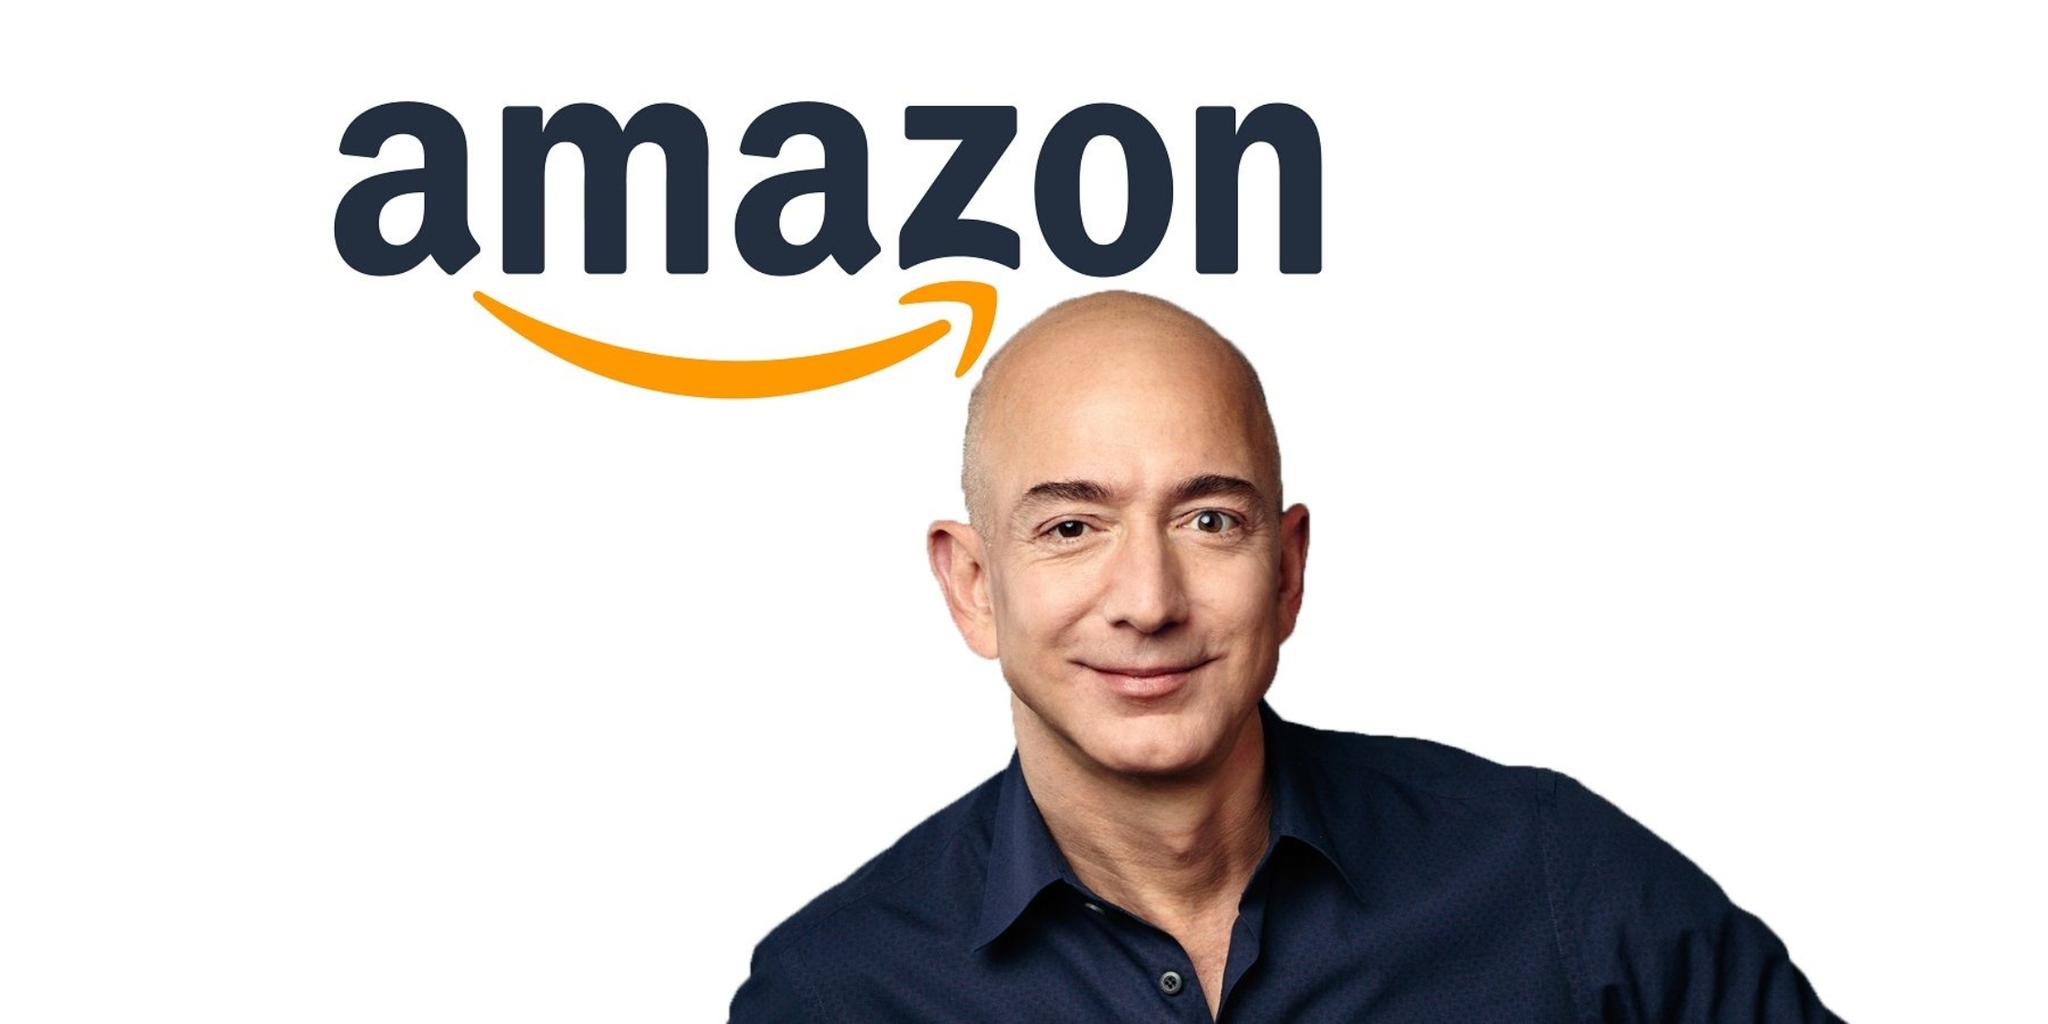 Bezos se ha convertido en el hombre ms rico del mundo gracias a Amazon